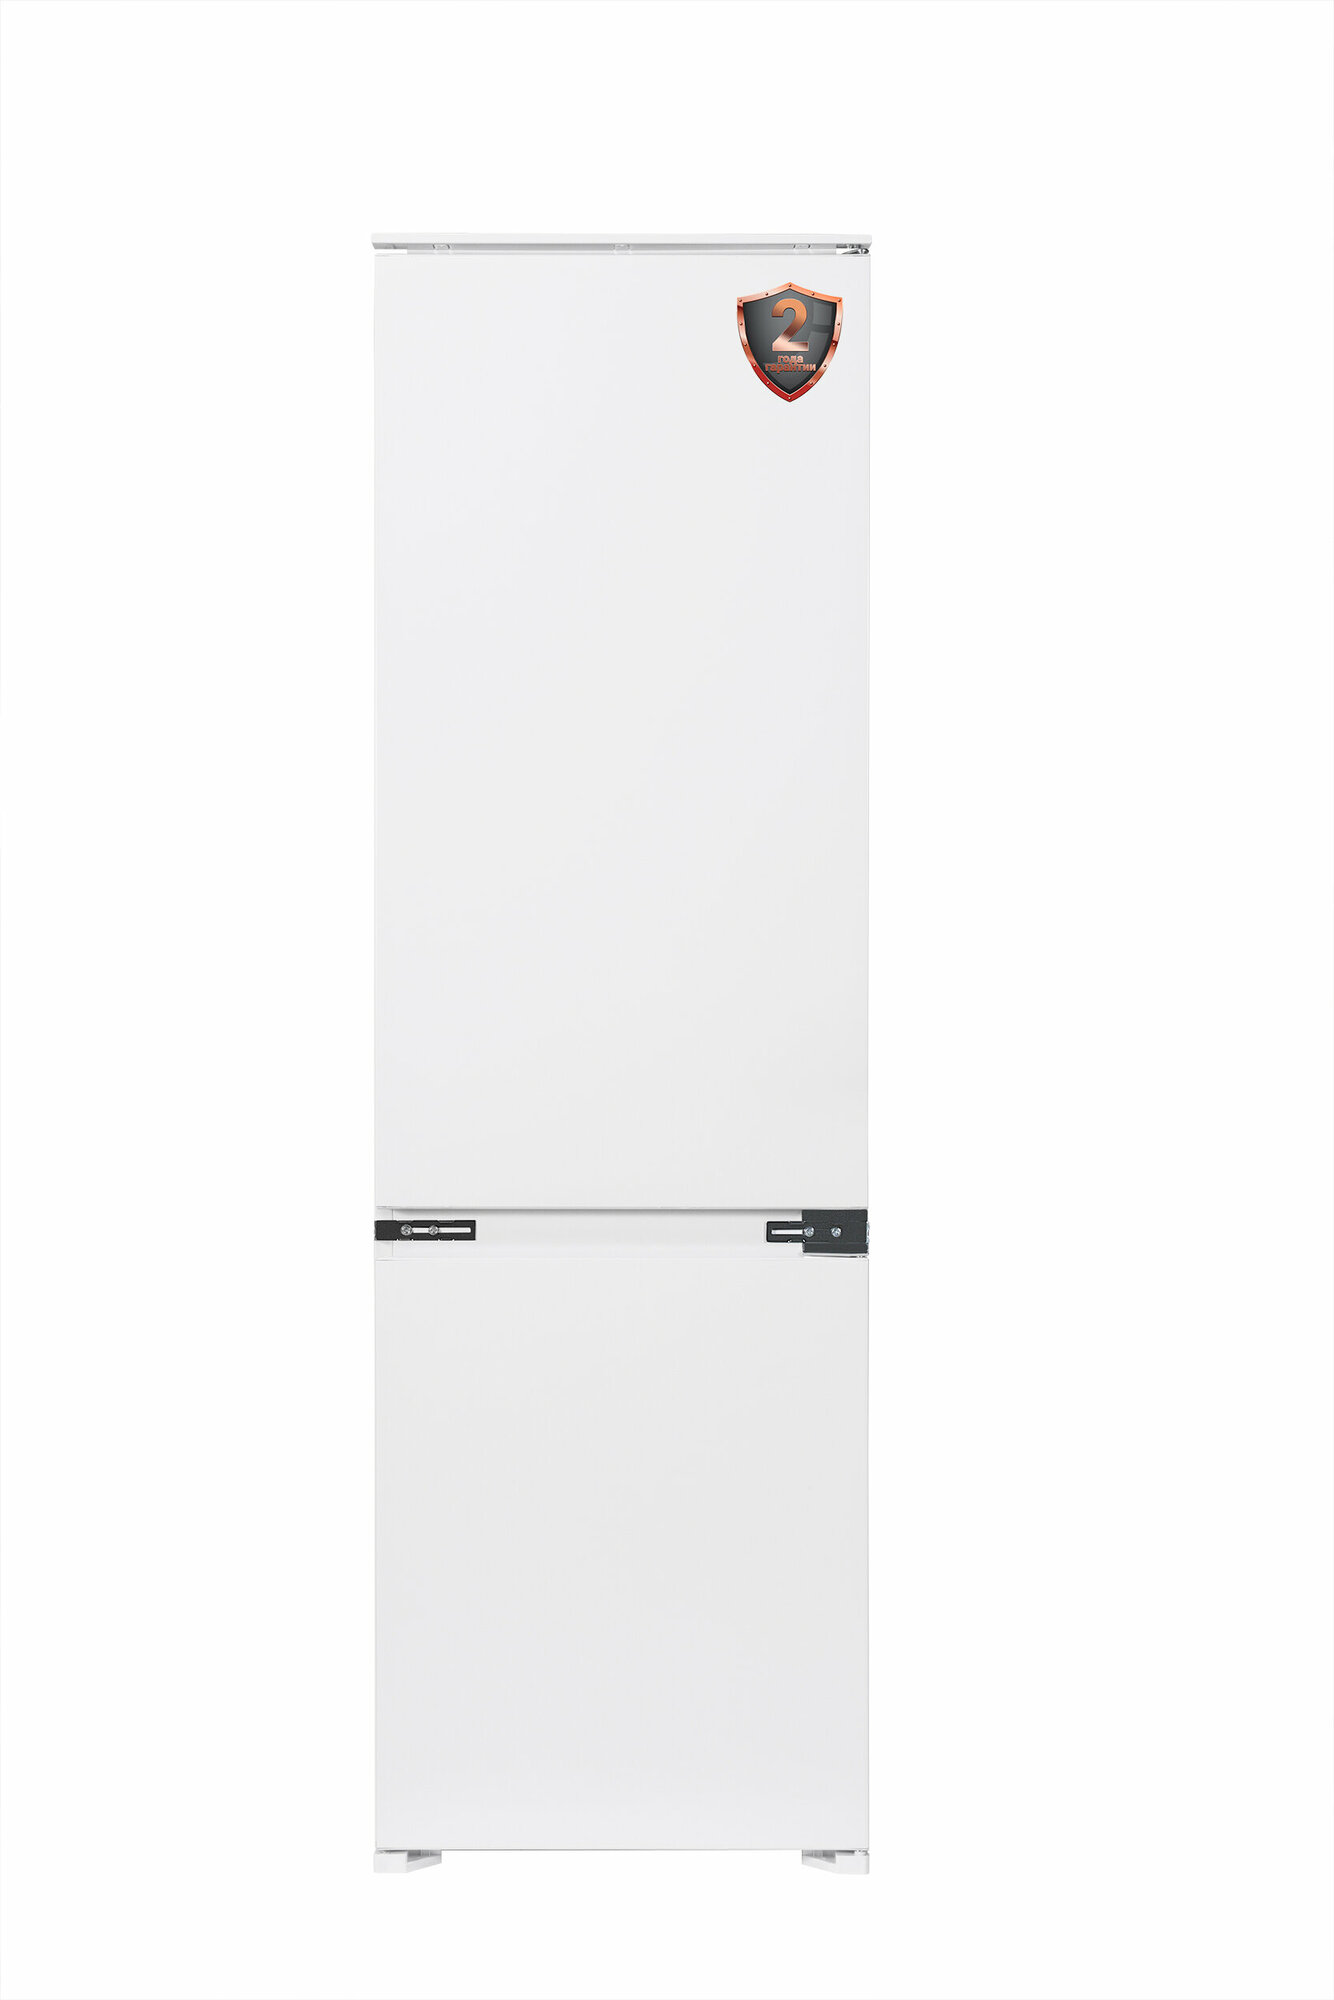 Встраиваемый холодильник Weissgauff WRKI 2801 MD 3 года гарантии, капельная система размораживания, SMART-режим, SUPER-режим, автономное сохранение холода до 13 ч, перенавешиваемые двери, LED-освещение, класс энергопотребления А+